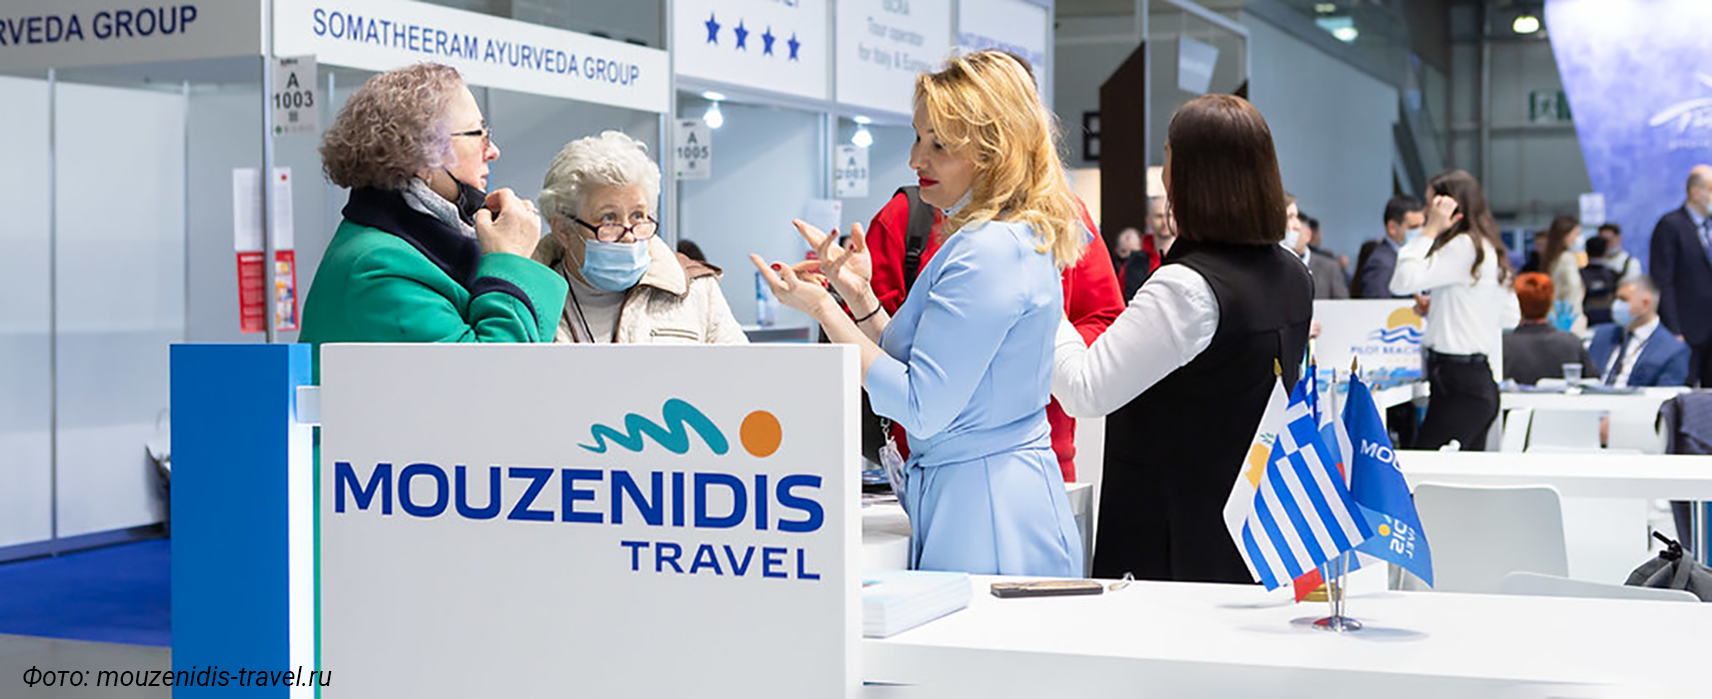 Mouzenidis Travel уходит с российского рынка. Сколько денег вернут туристам?